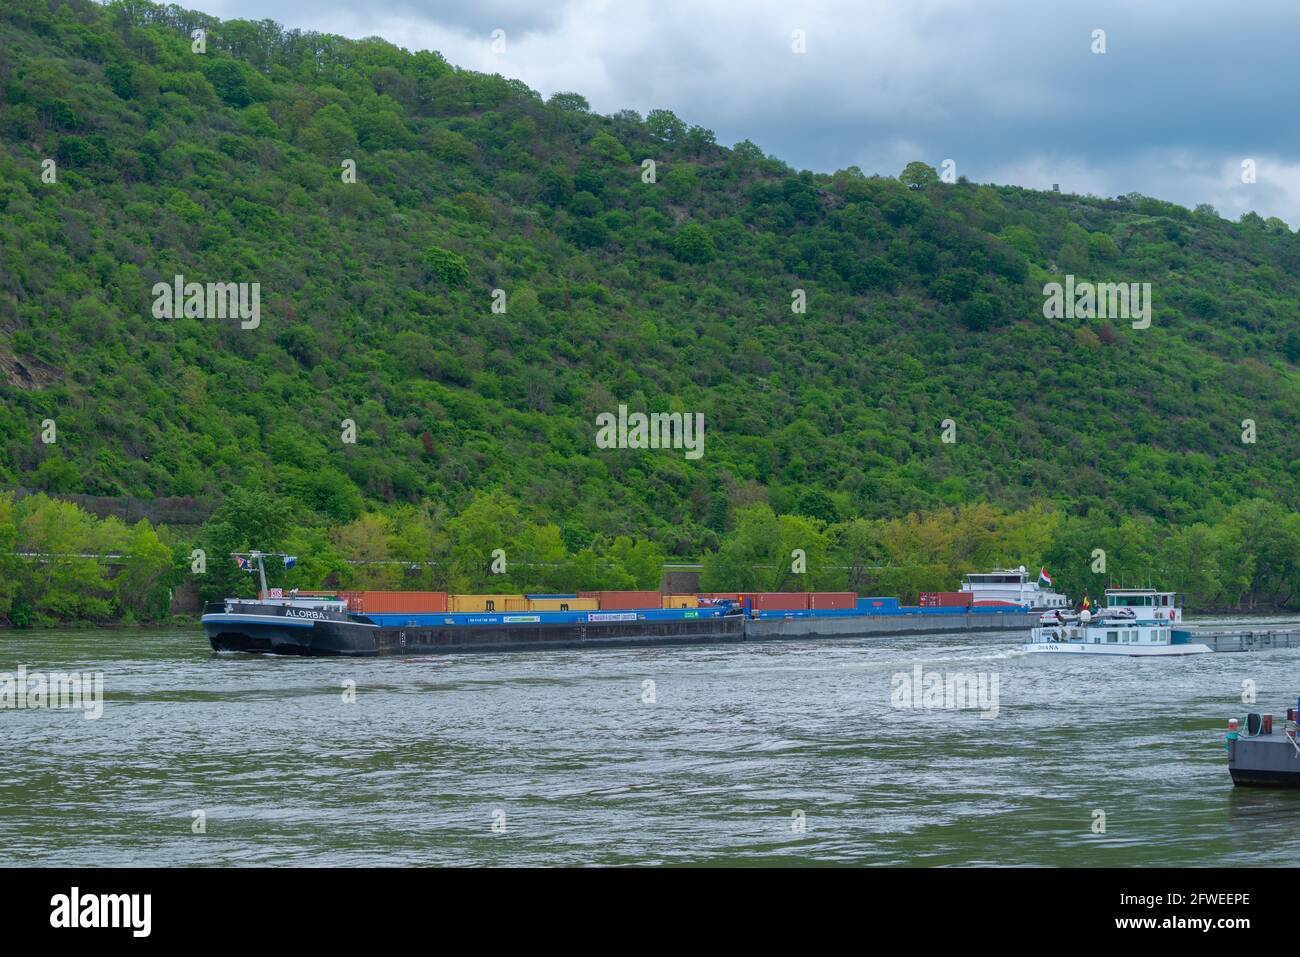 Binnenschifffahrt, holländisches Containerschiff auf dem Rhein bei Boppard, Rheintal, UNESCO-Weltkulturerbe, Rheinland-Pfalz, Deutschland Stockfoto